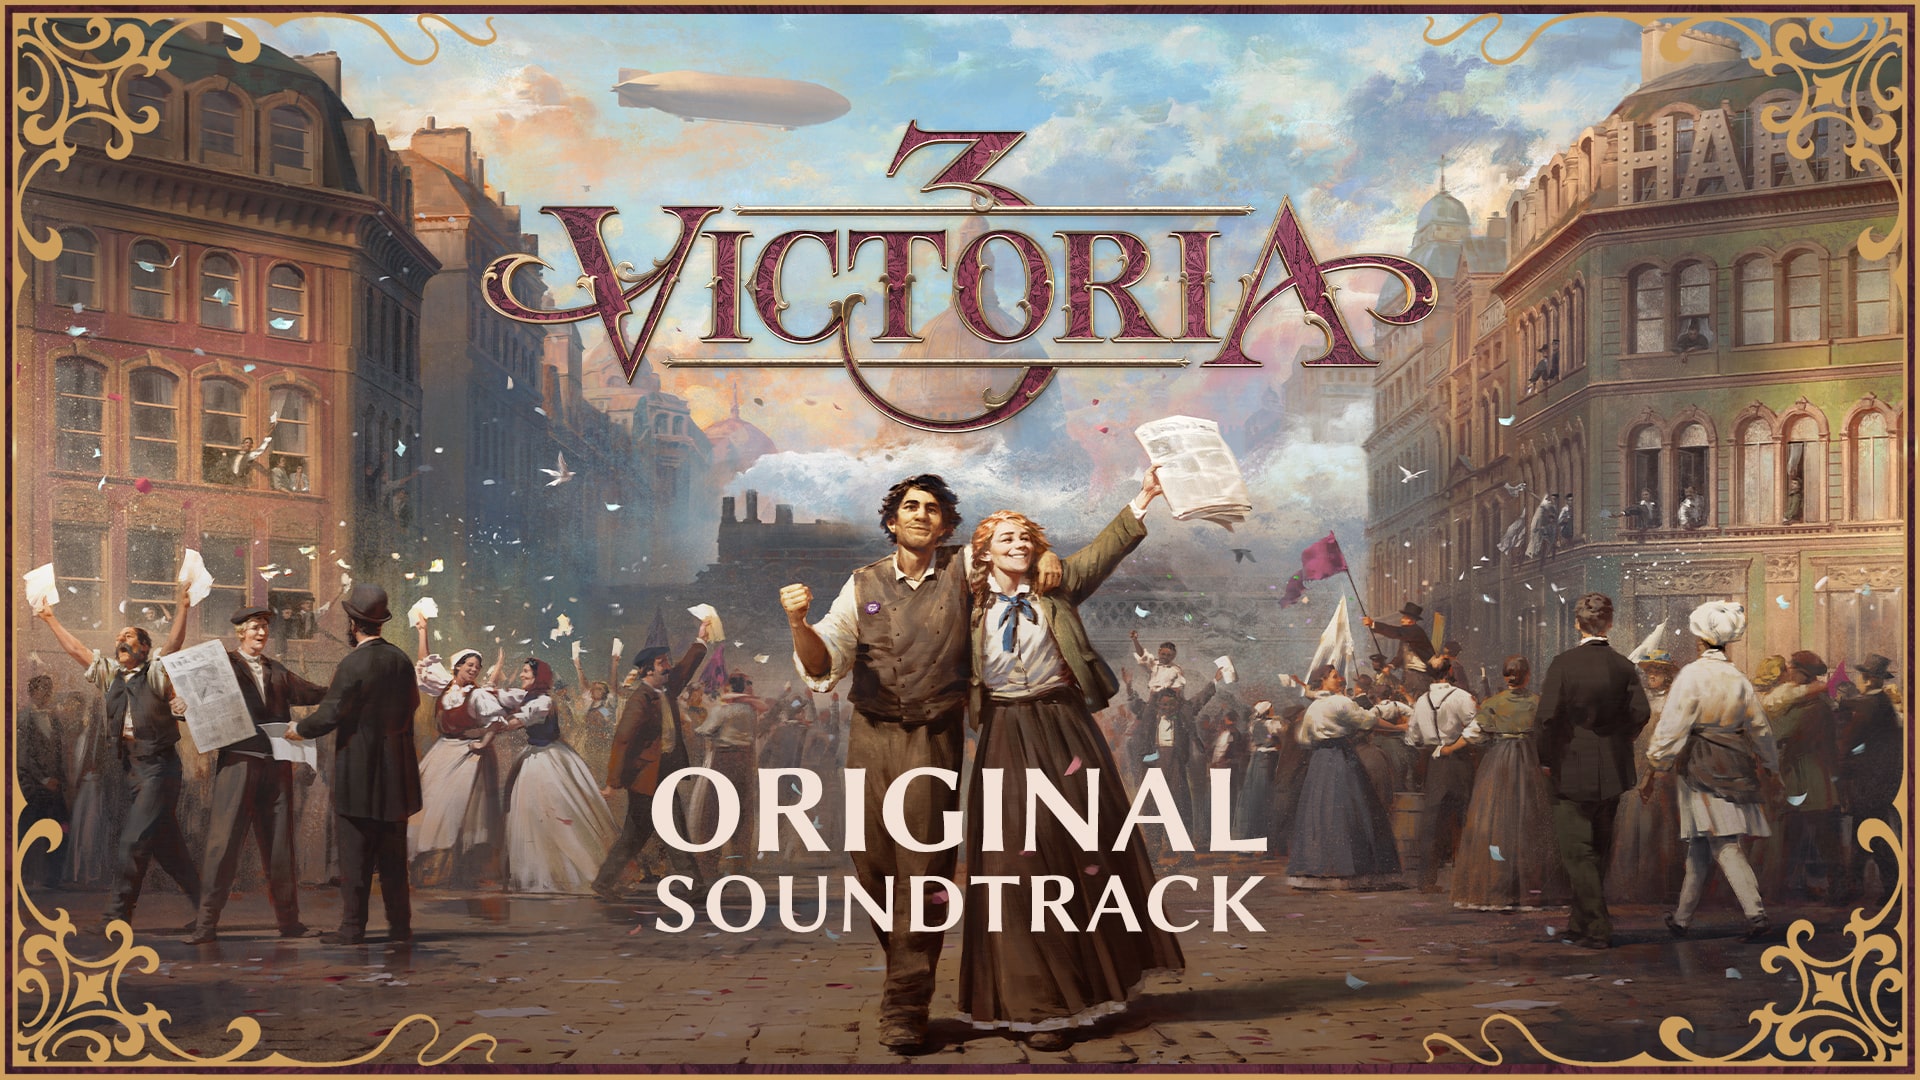 《维多利亚3》原声带公布 游戏10月25日发售 二次世界 第2张